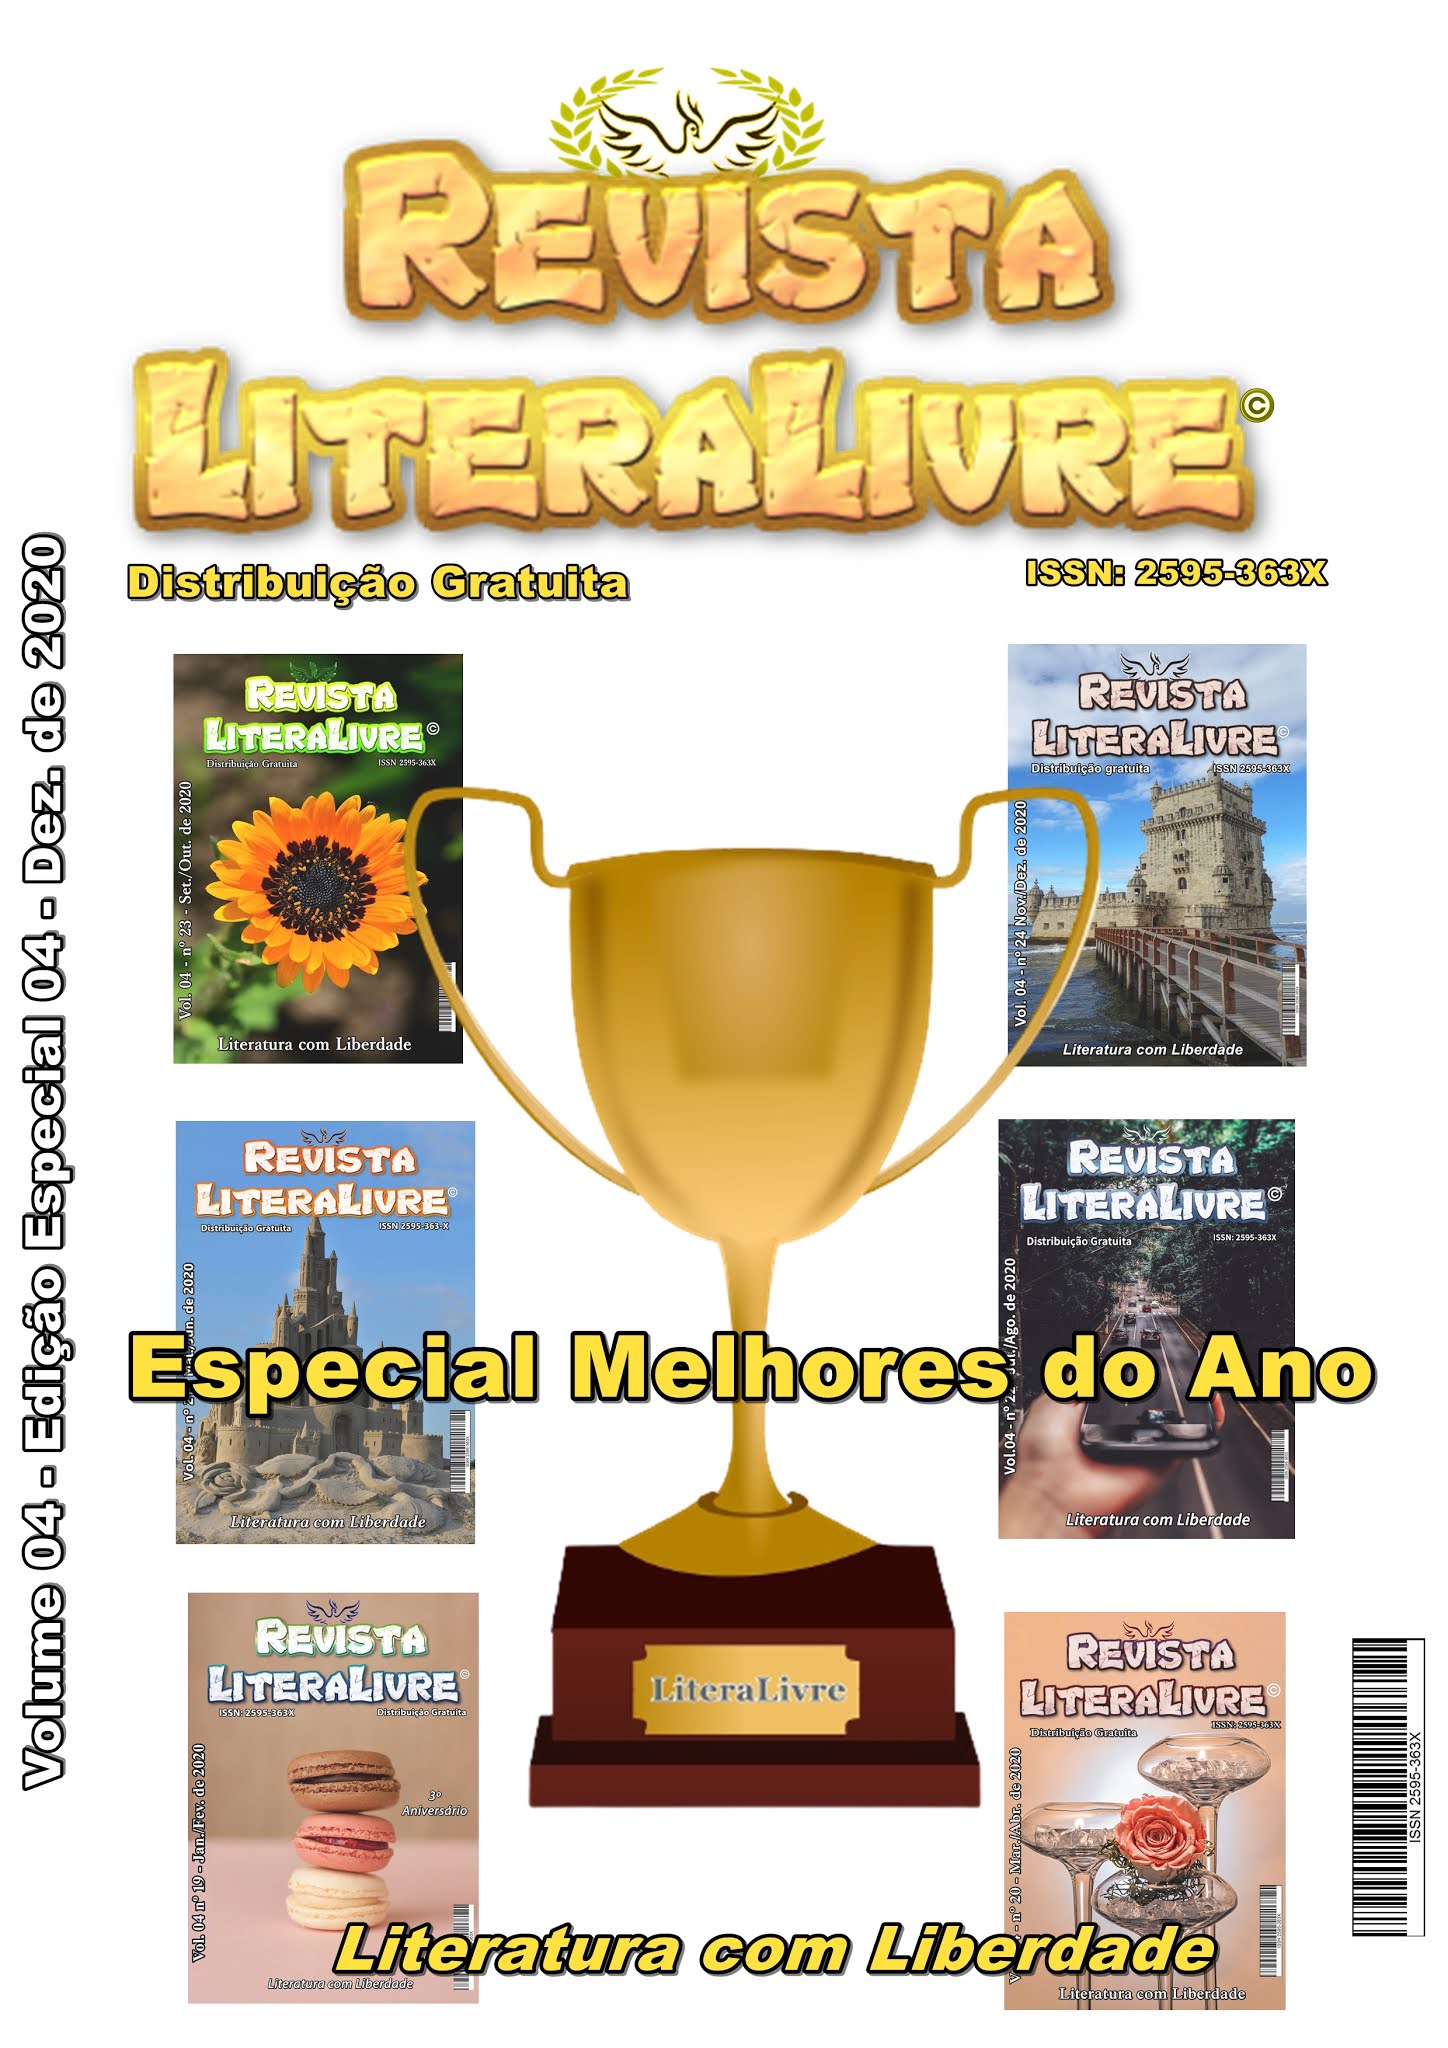 Calaméo - Revista LiteraLivre 22ª Edição